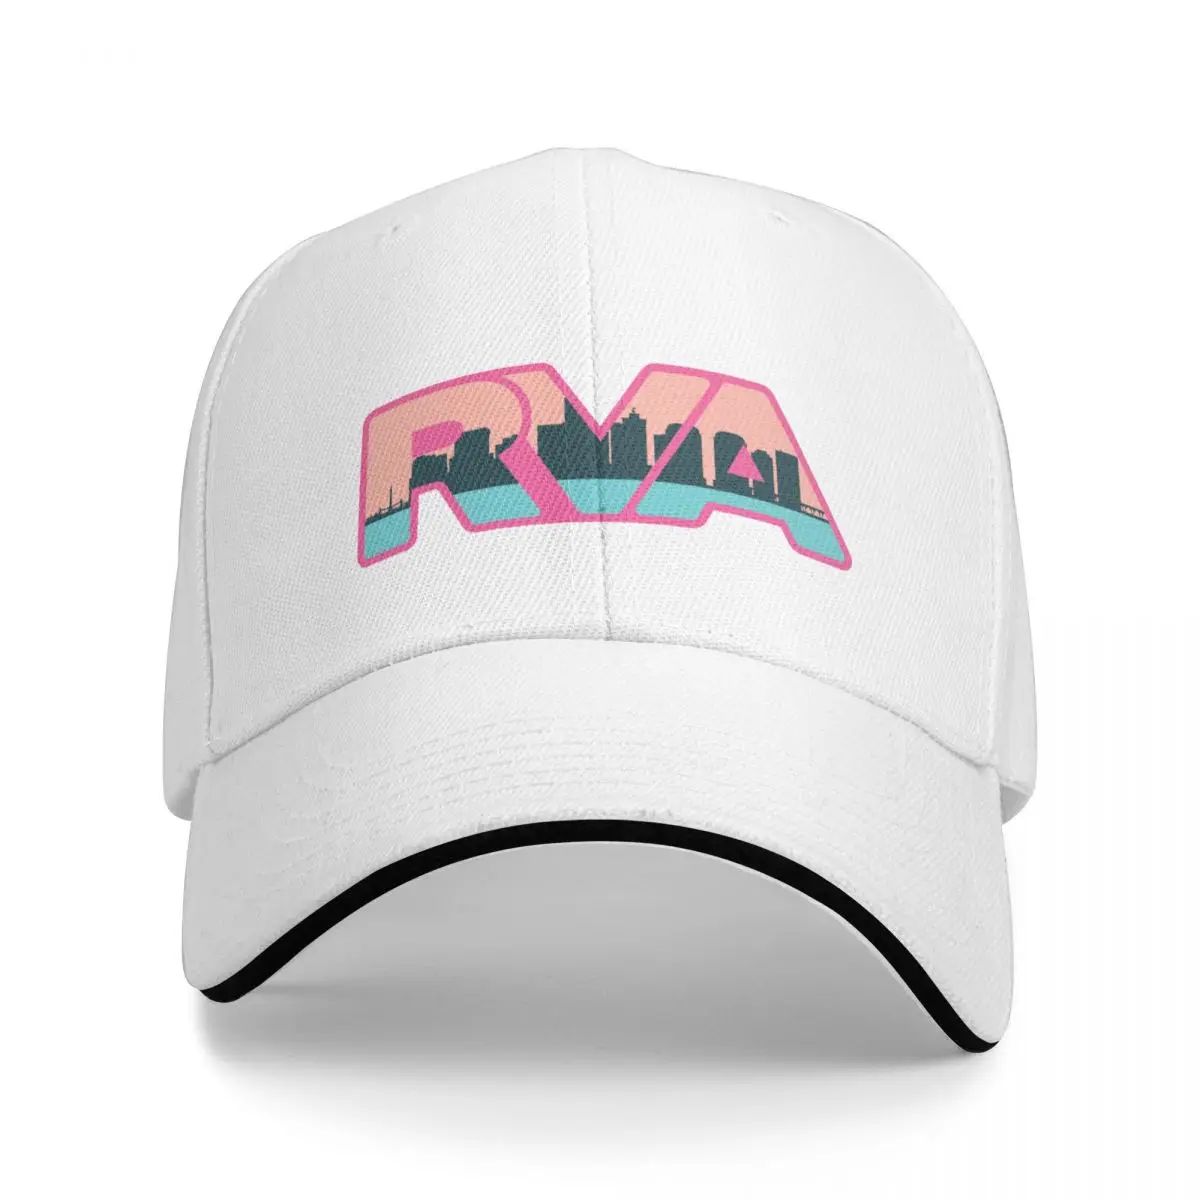 Рва Ричмонд va логотип бейсбольная кепка шляпа от Солнца для детей пушистые мужчины шляпа бейсболка регби шапка Женская по